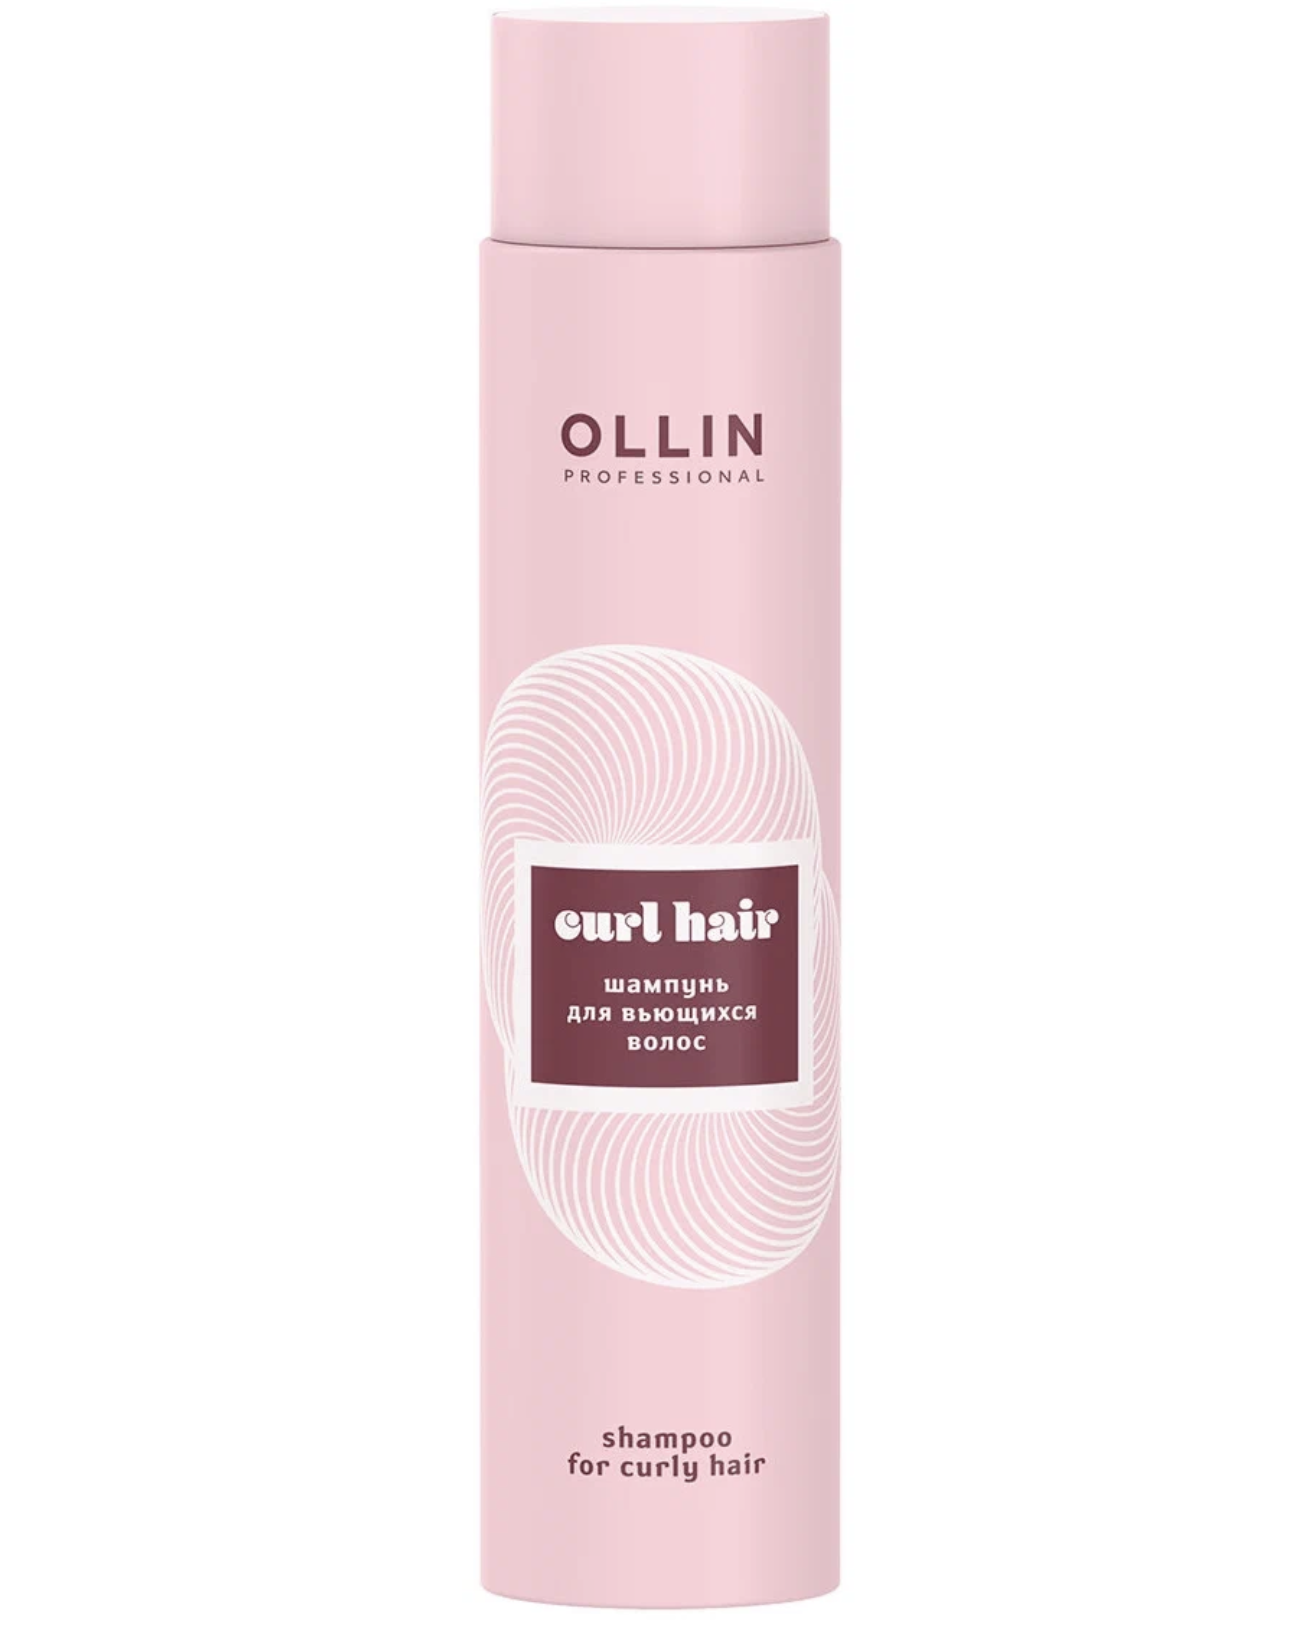   / Ollin Professional -     Curl Hair 300 